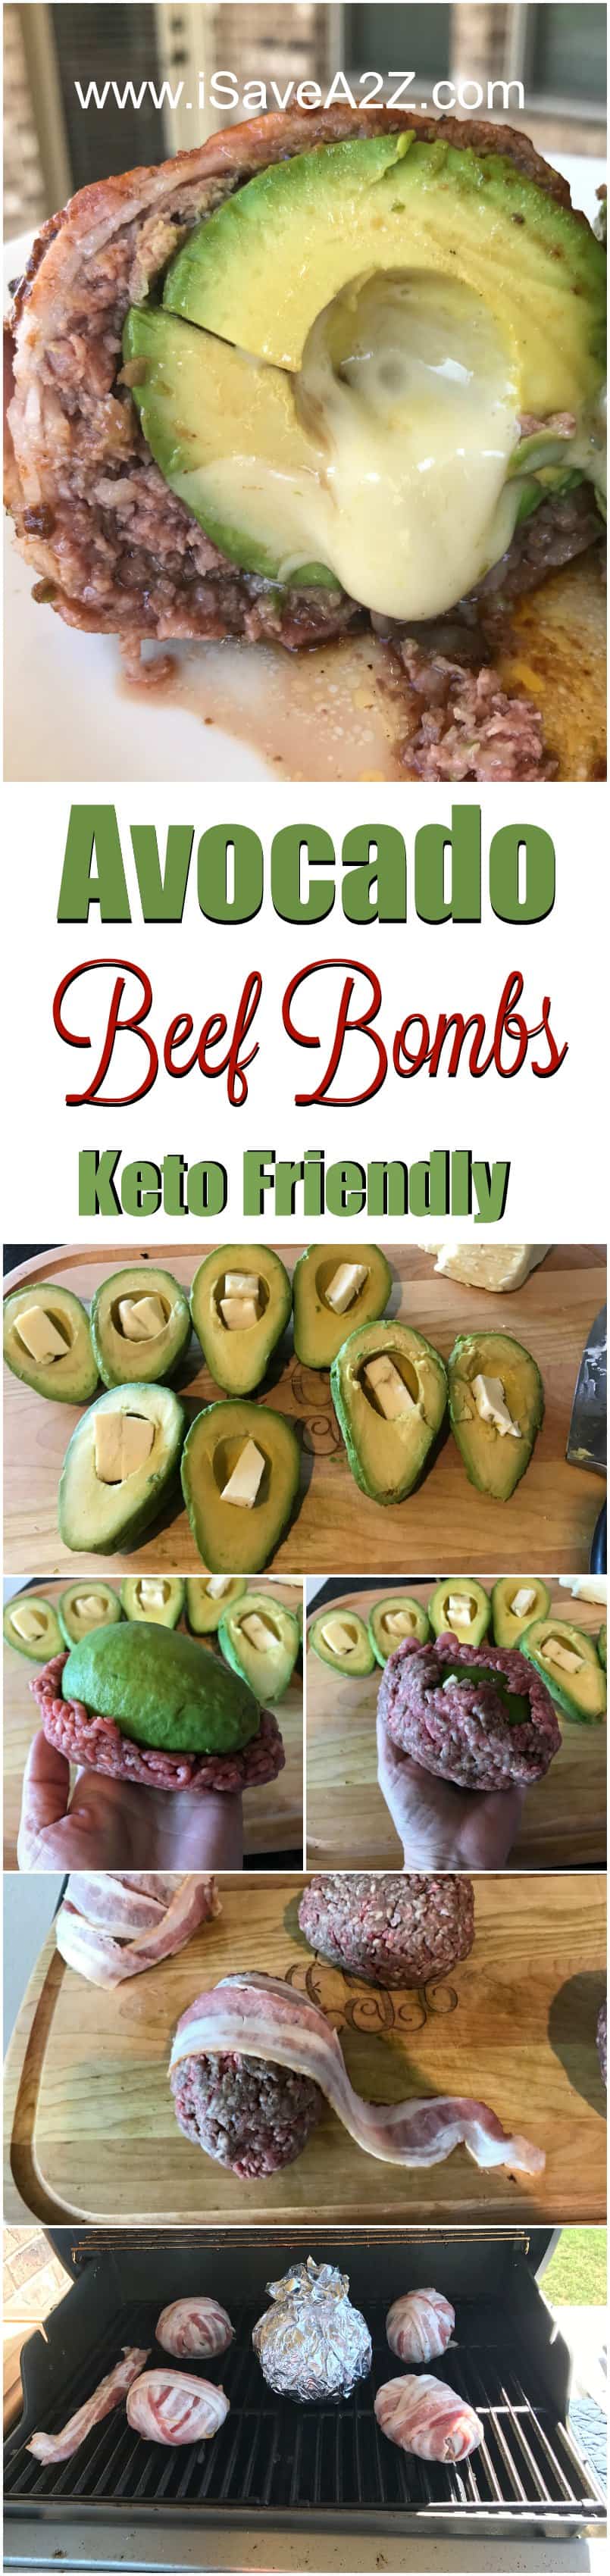 Keto Friendly Avocado Beef Bombs Recipe